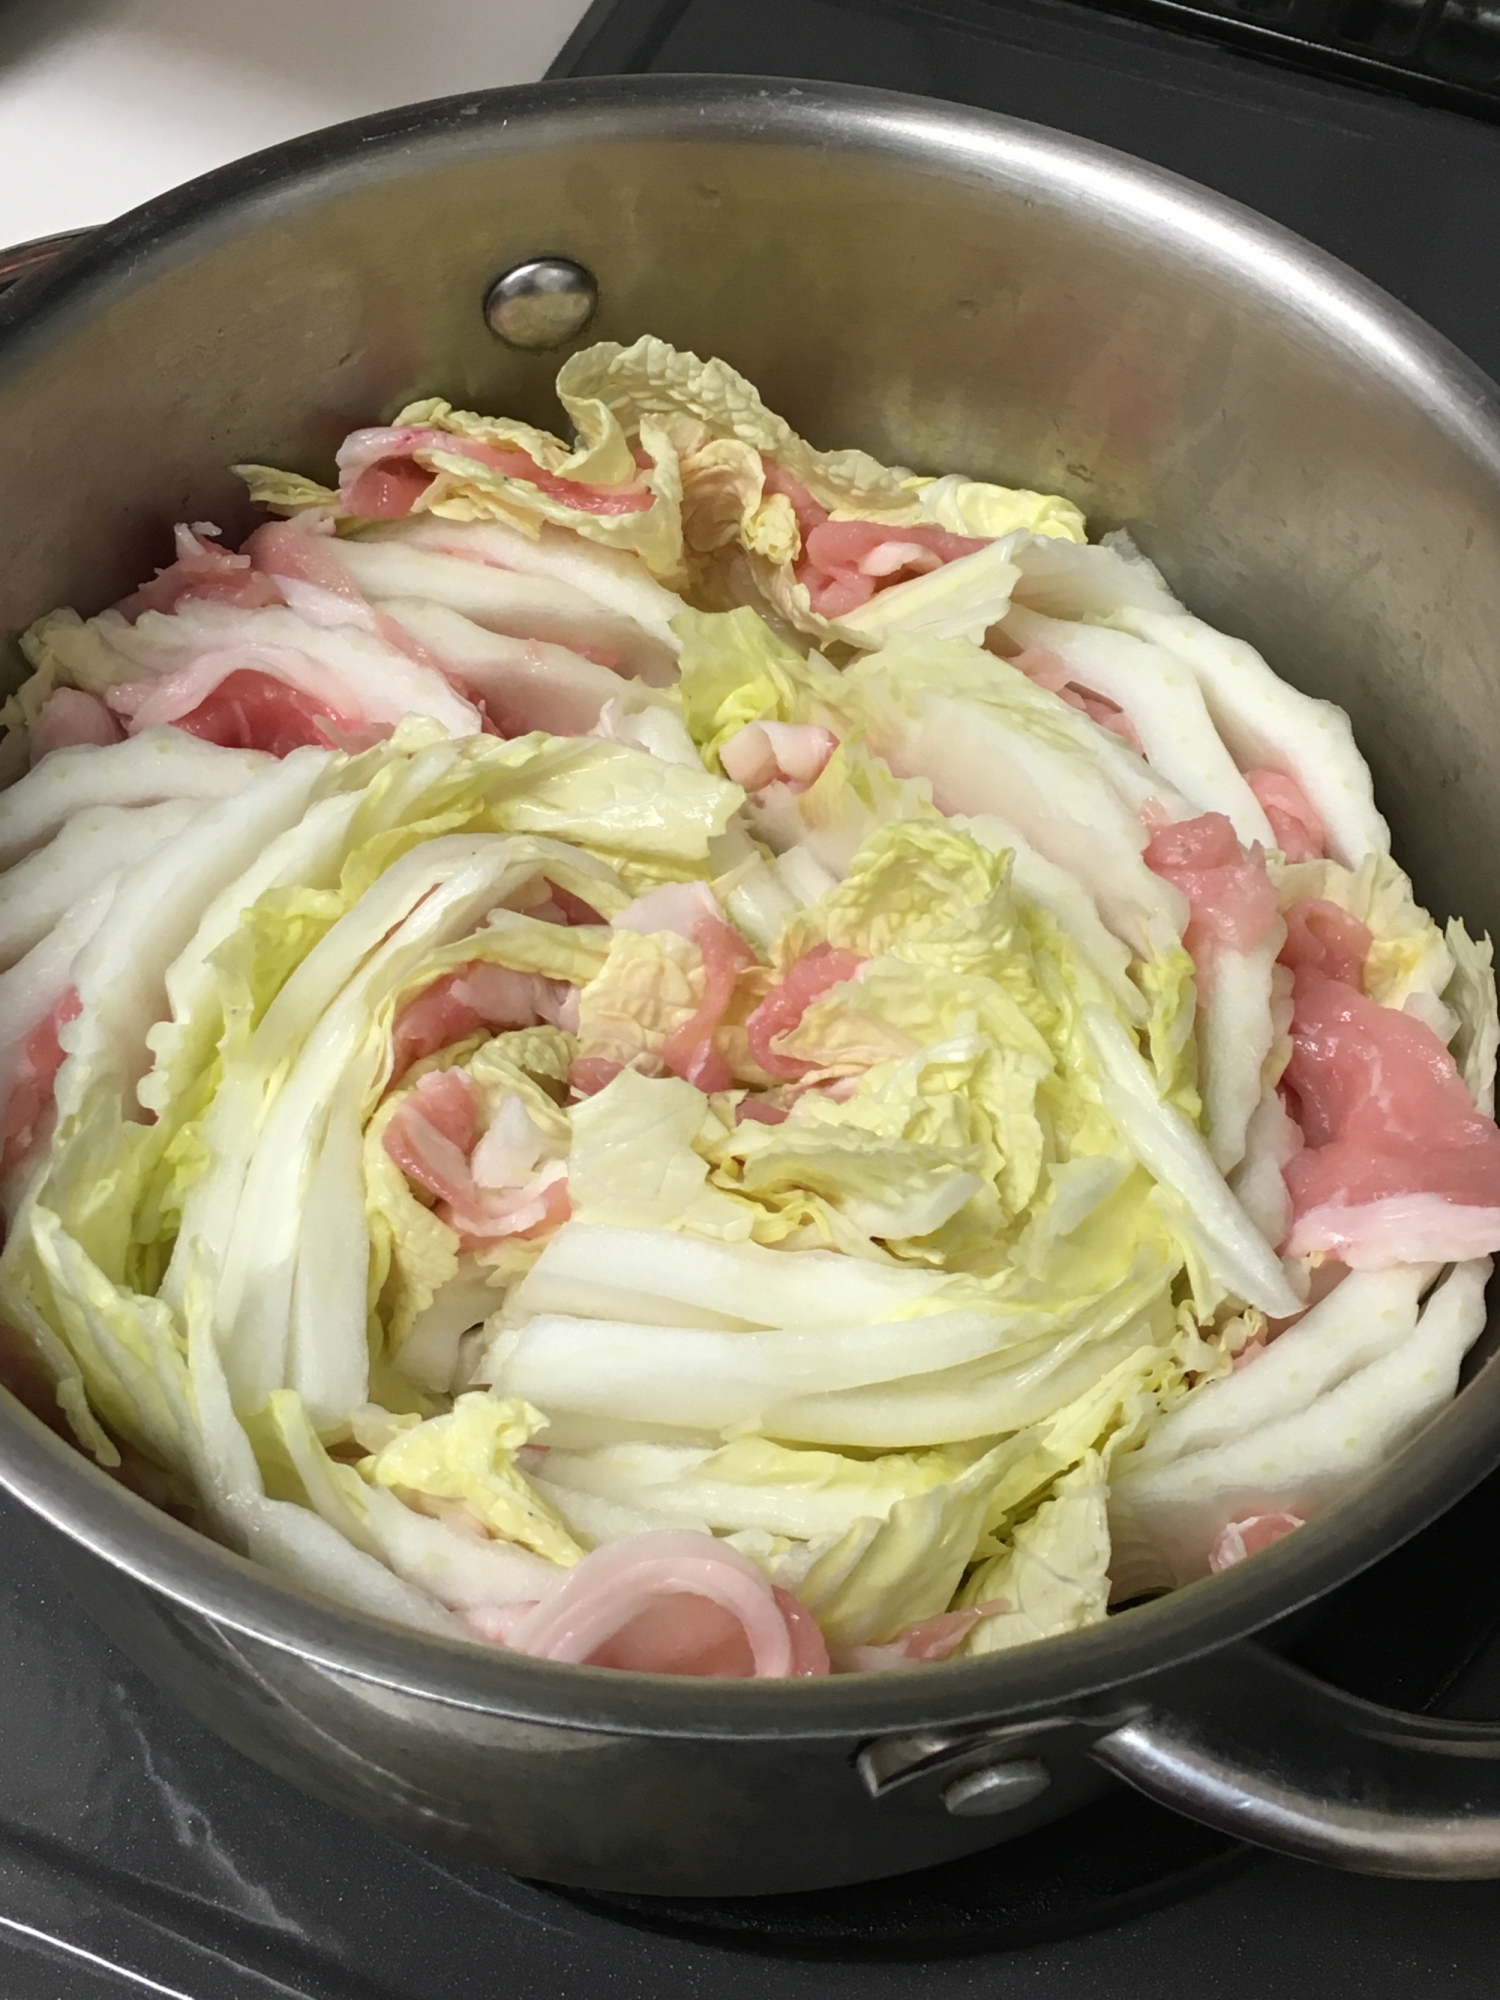 豚バラと白菜の重ね鍋